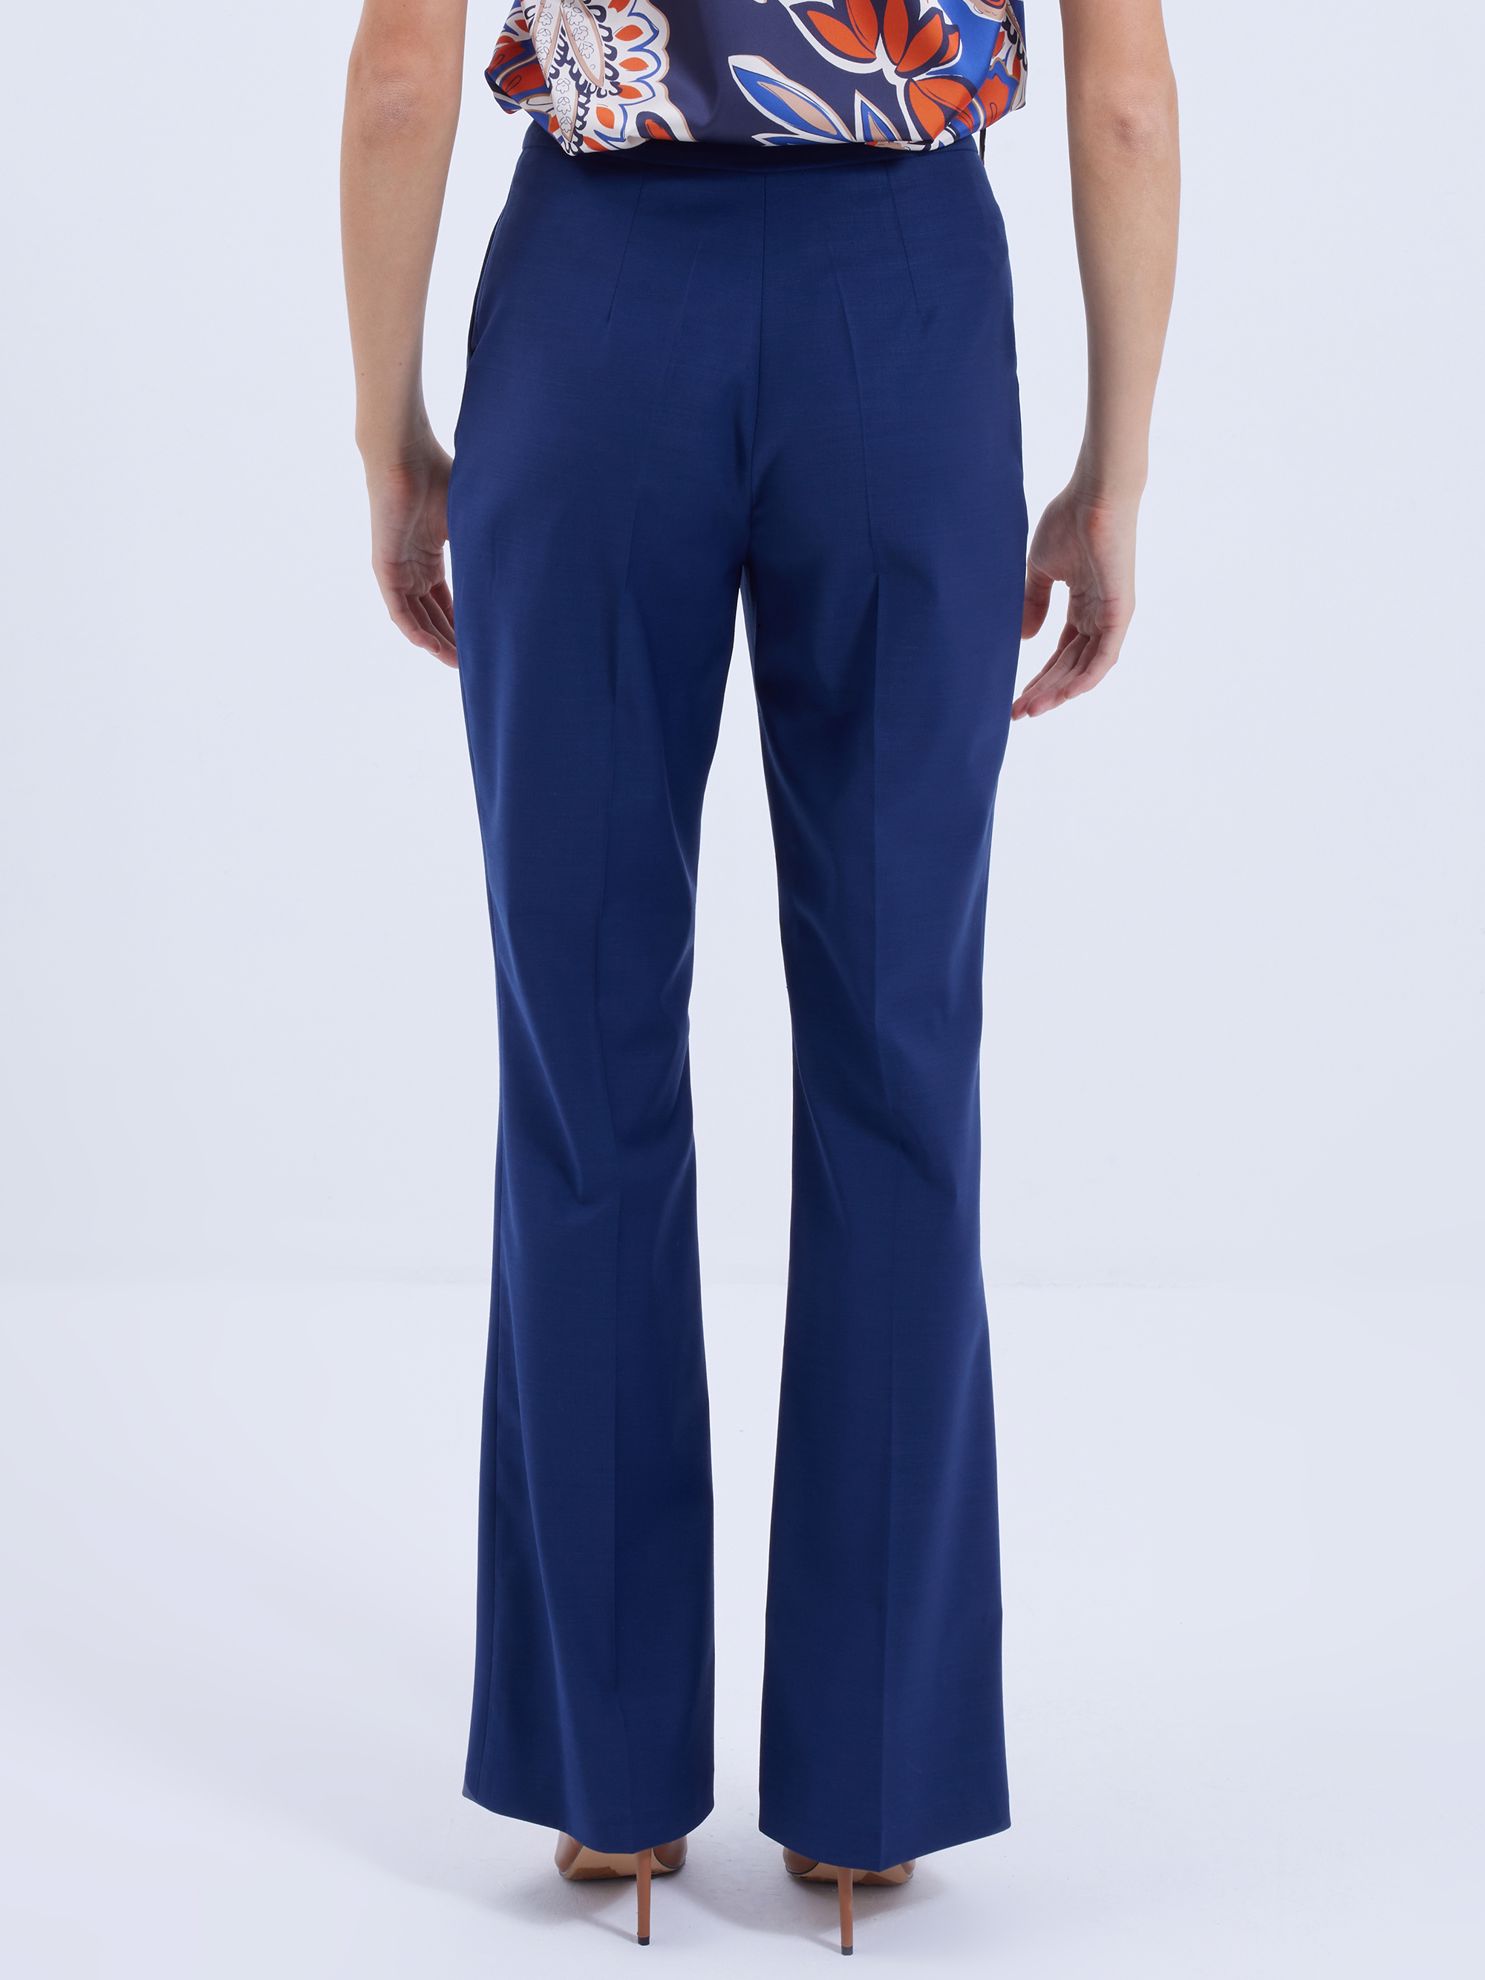 Karaca Kadın Pantolon-Lacivert. ürün görseli